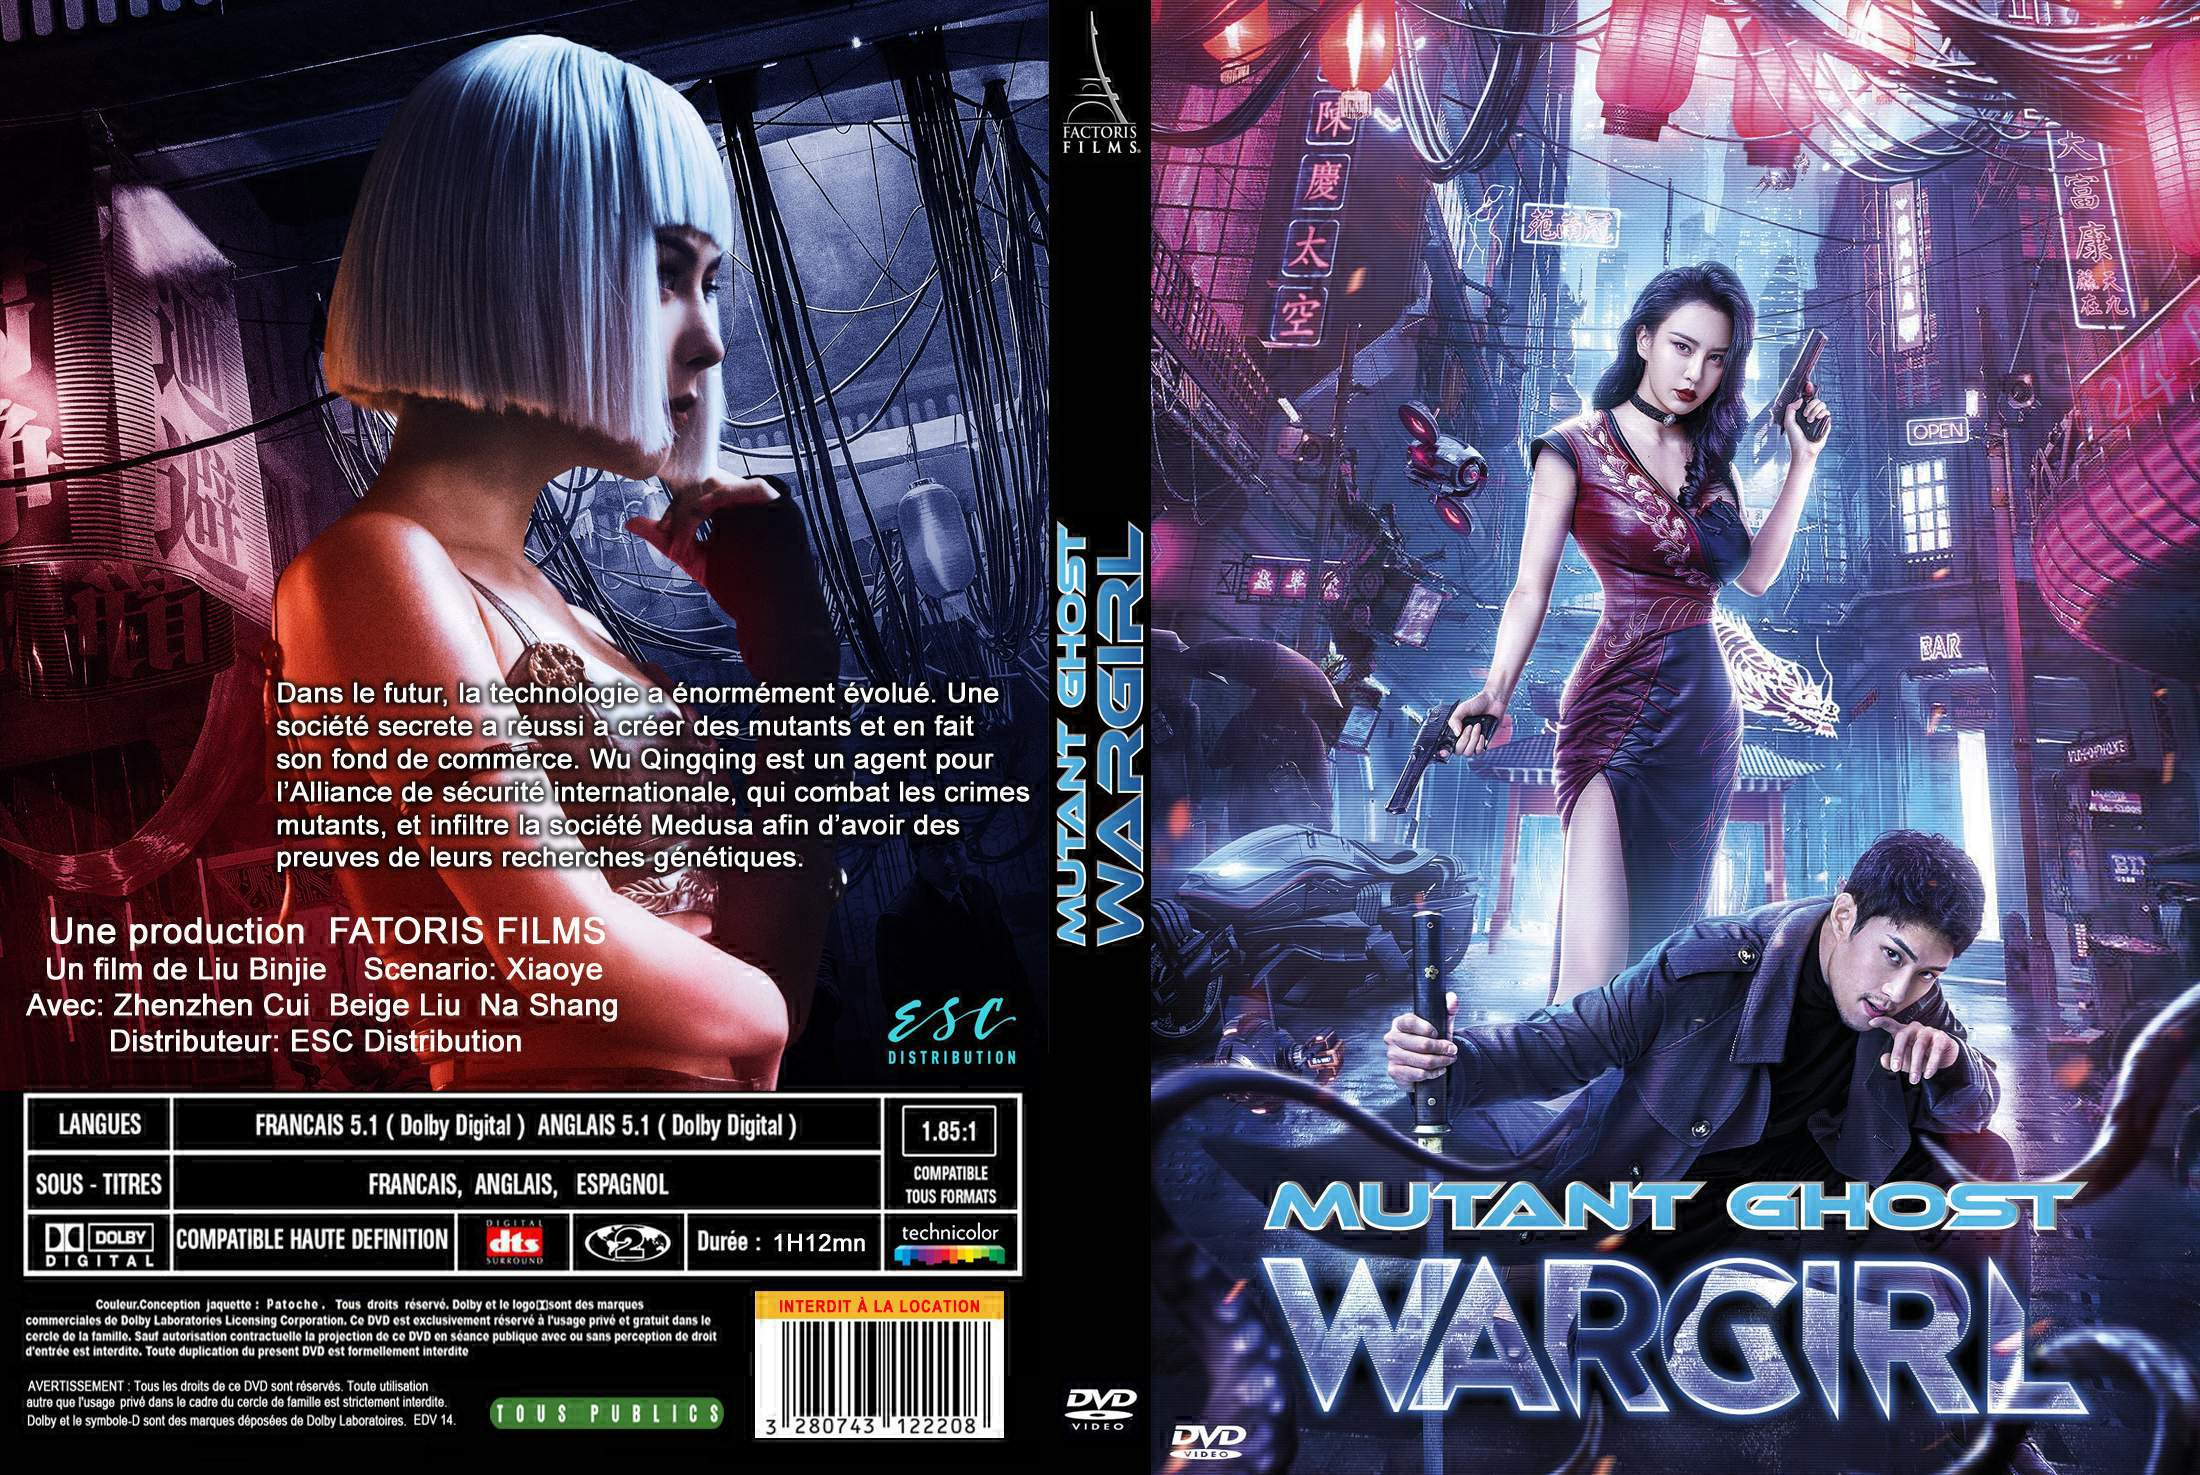 Jaquette DVD Wargirl custom